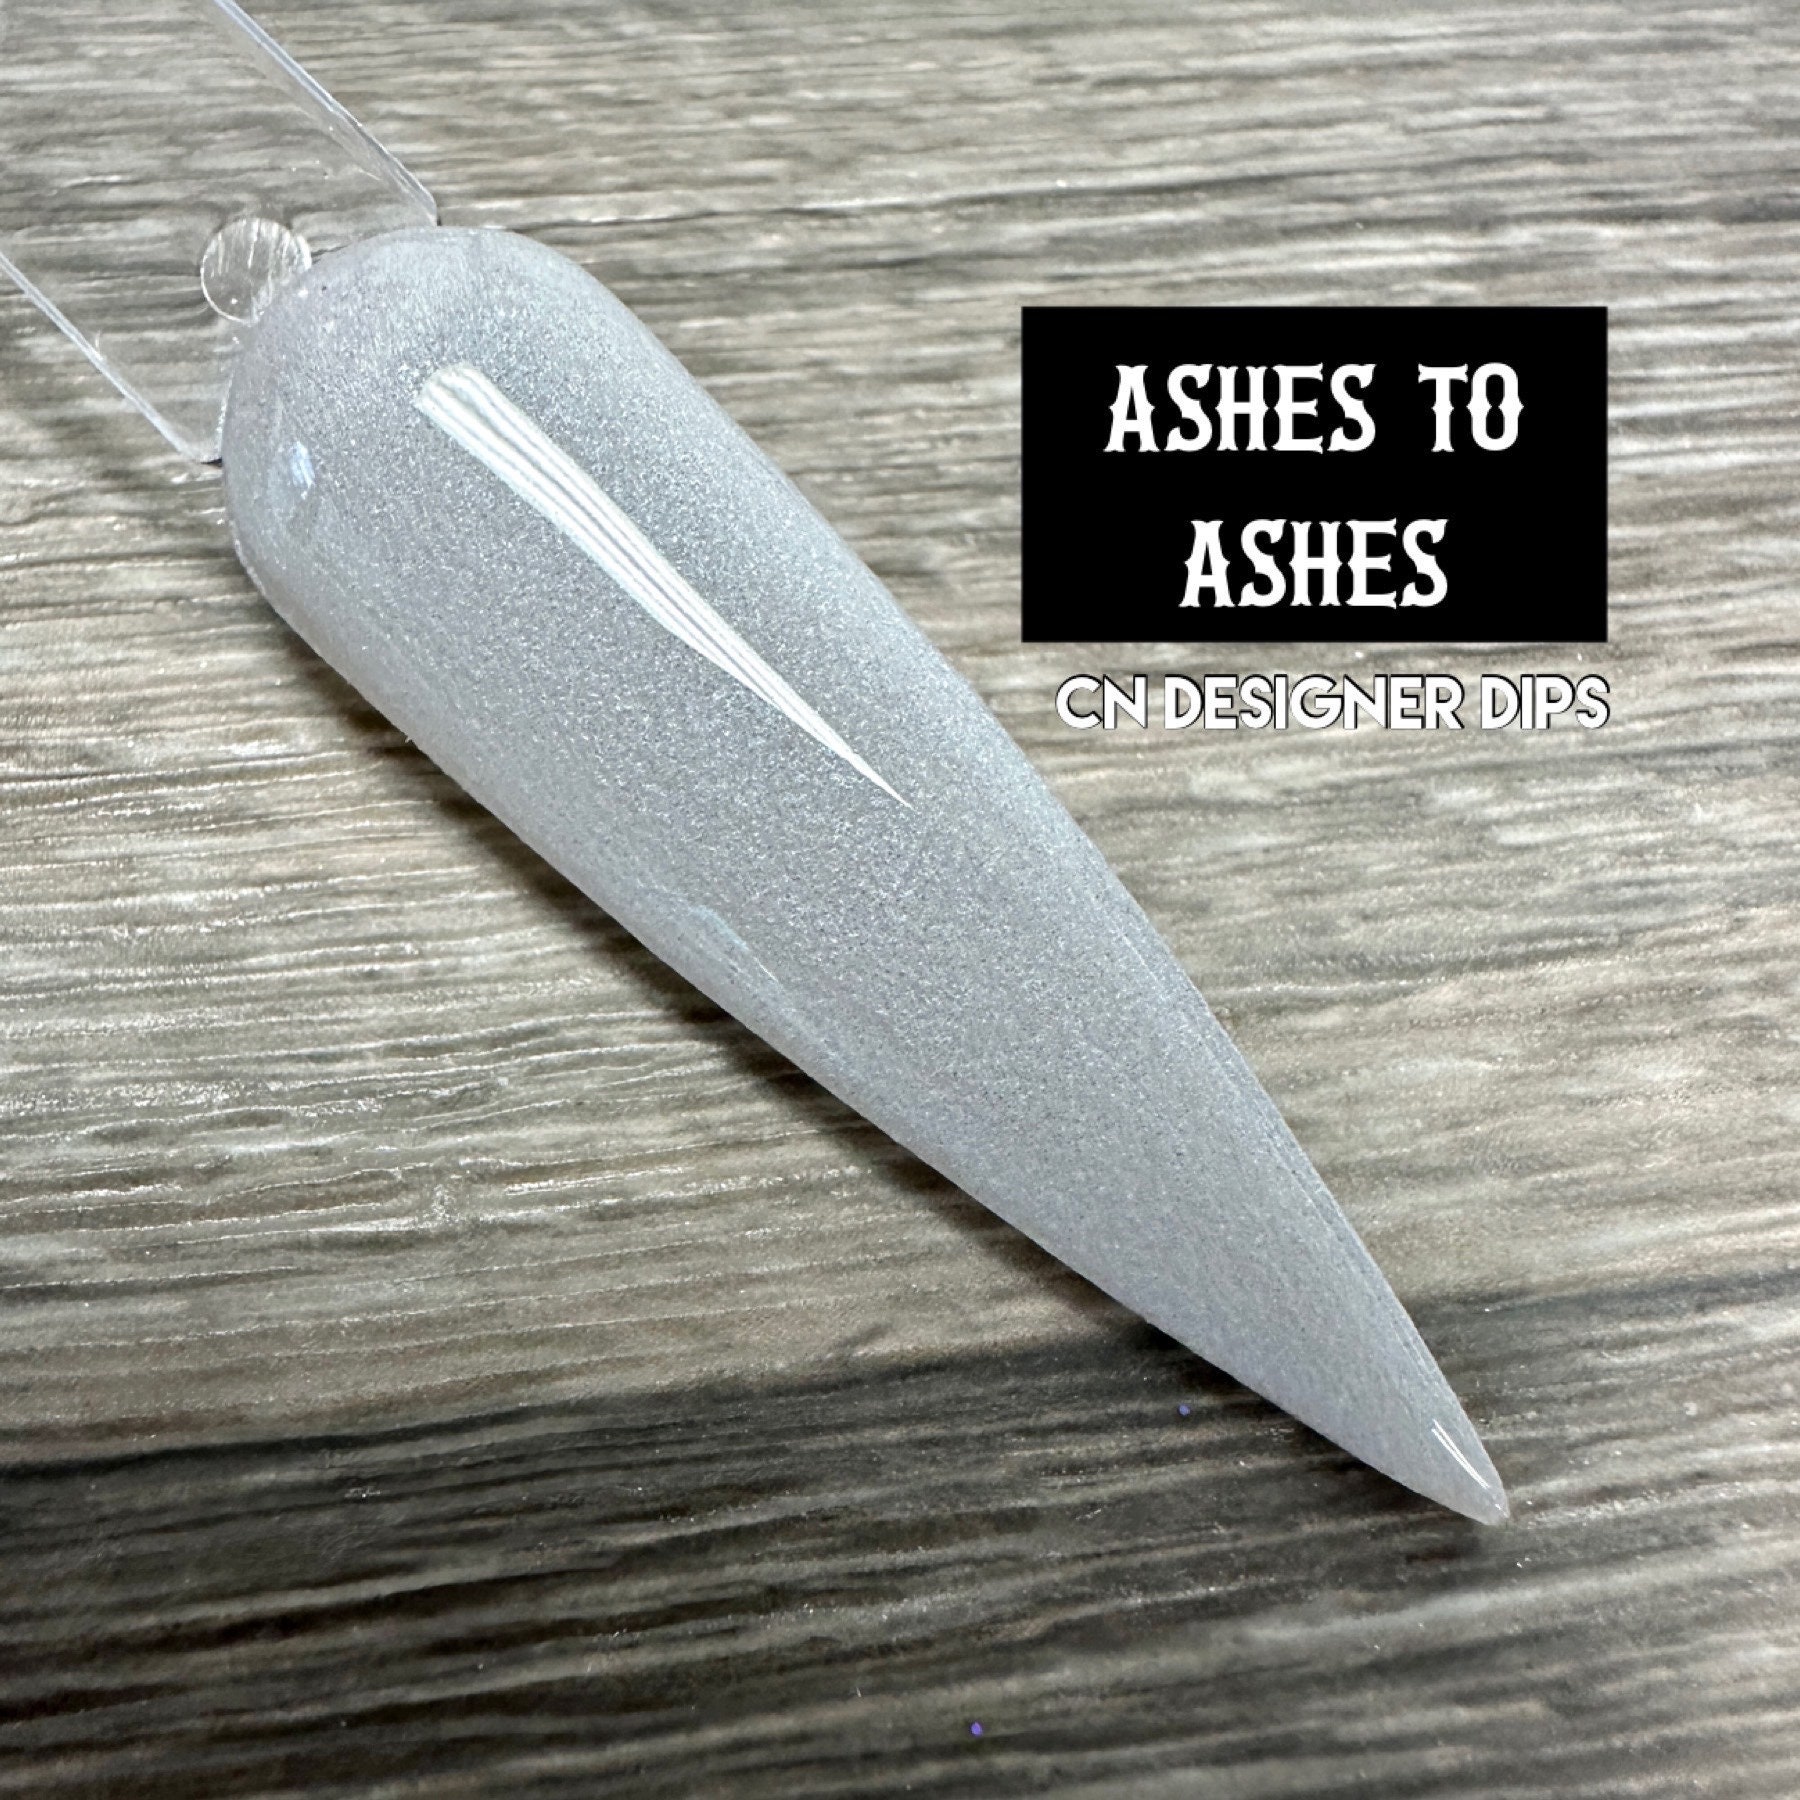 Ashes To Ashes - Dip-Puder, Dip-Puder Für Nägel, Nagel-Dip-Puder von CNDesignerDips